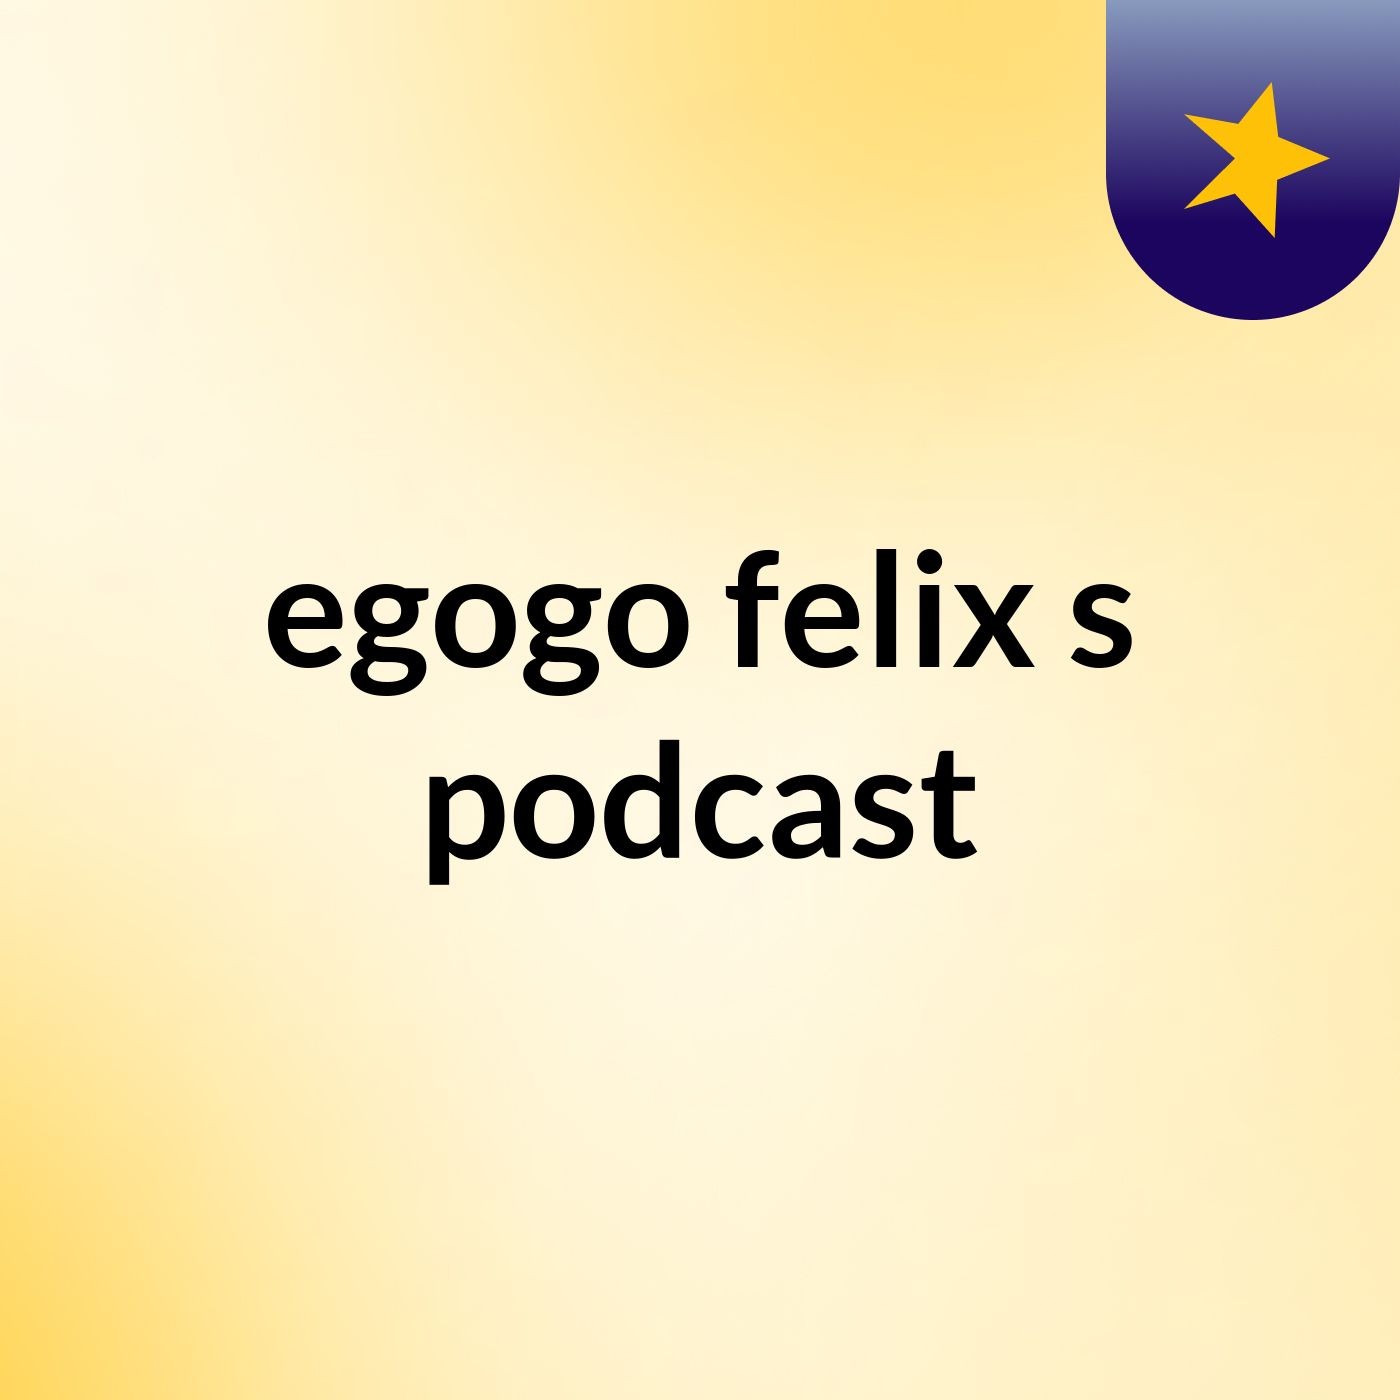 egogo felix's podcast